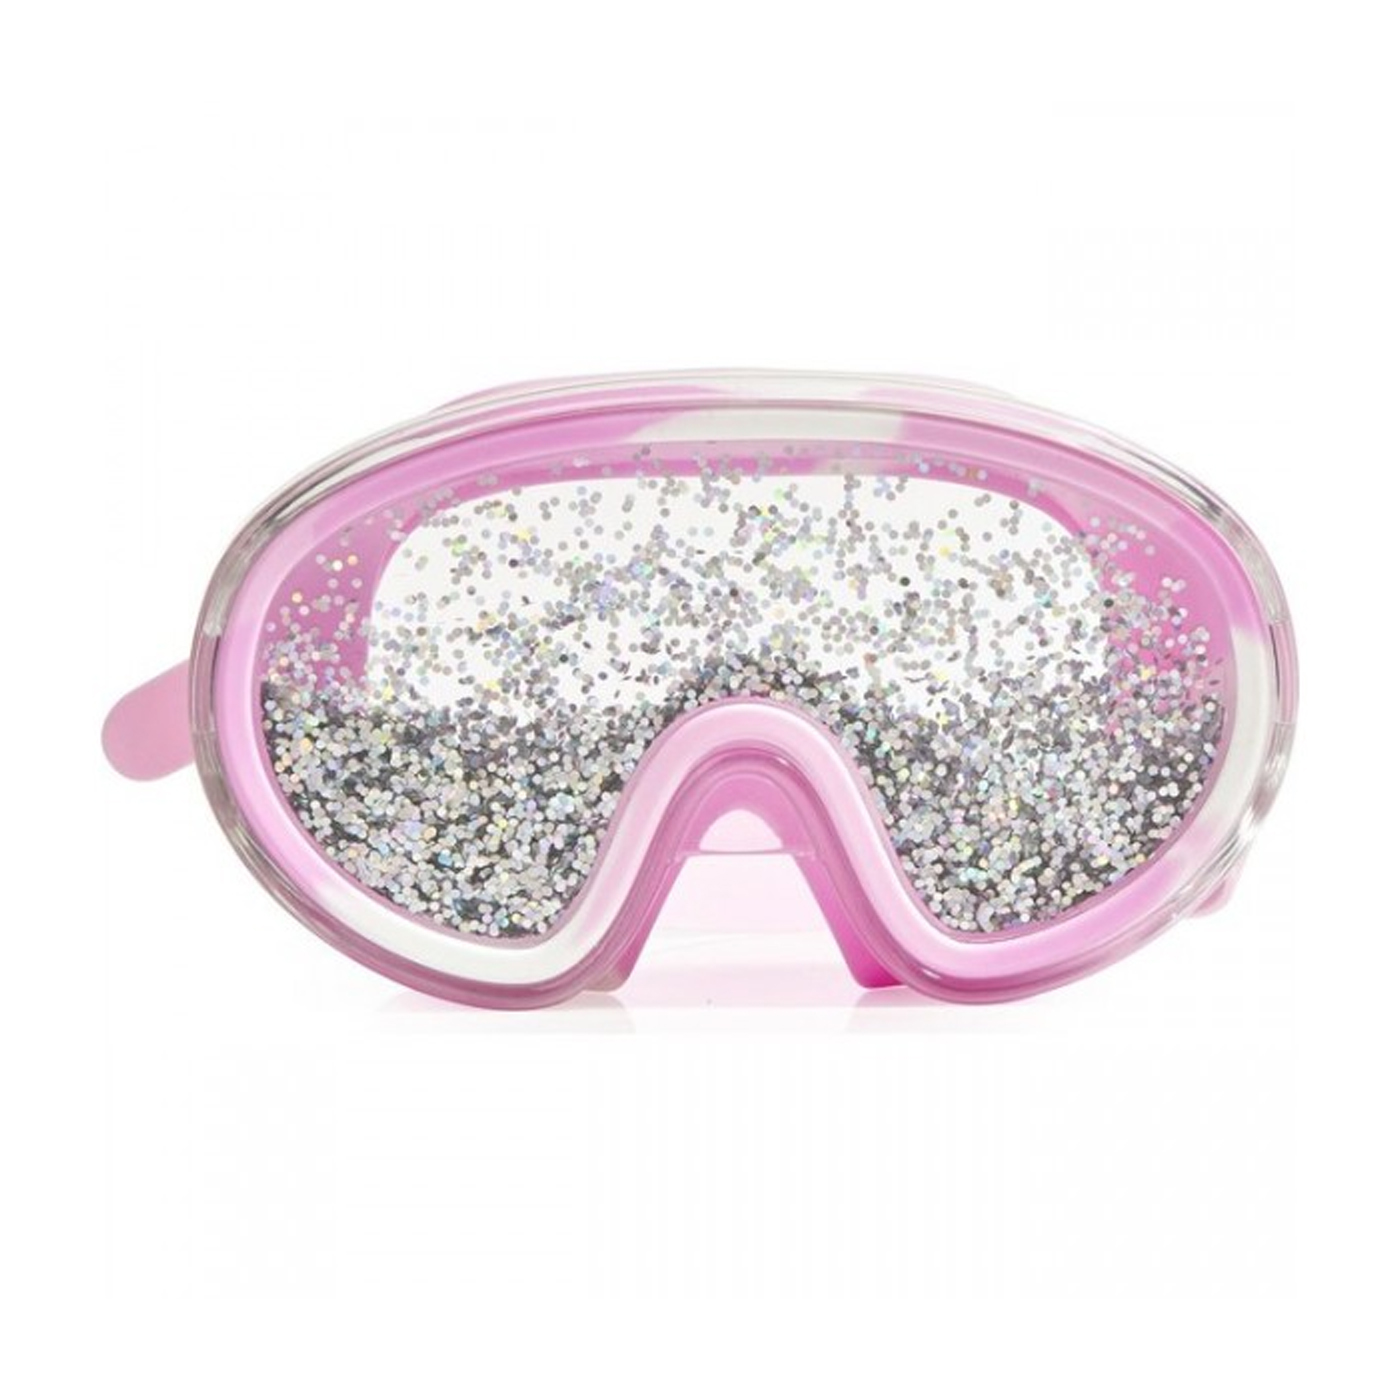  Bling2o Disco Fever Deniz Gözlüğü  | Bubble Gum Pink